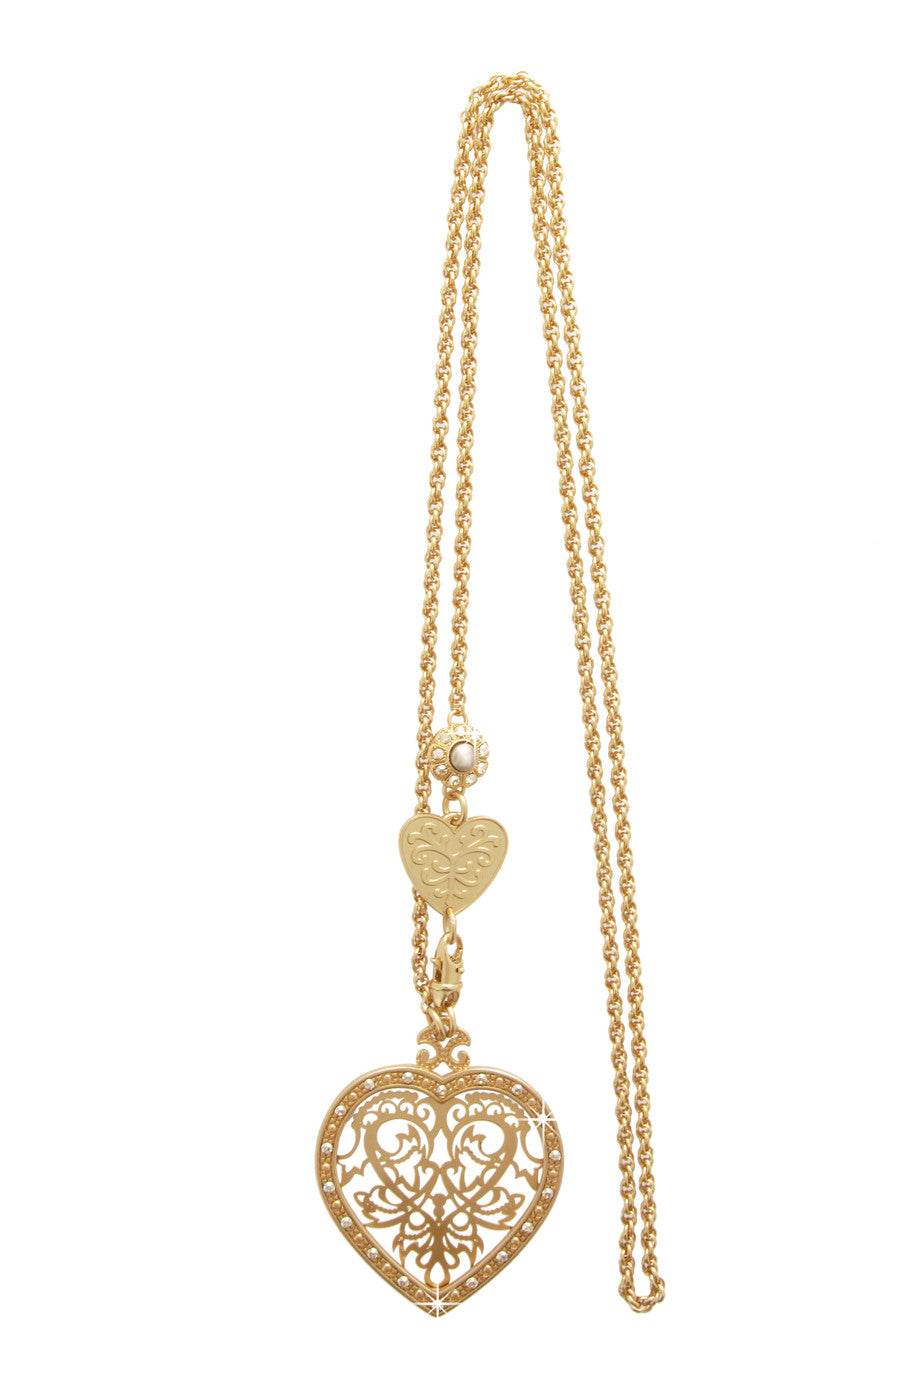 Χρυσό Μενταγιόν με Κρύσταλλα - Lk Designs | Κοσμήματα